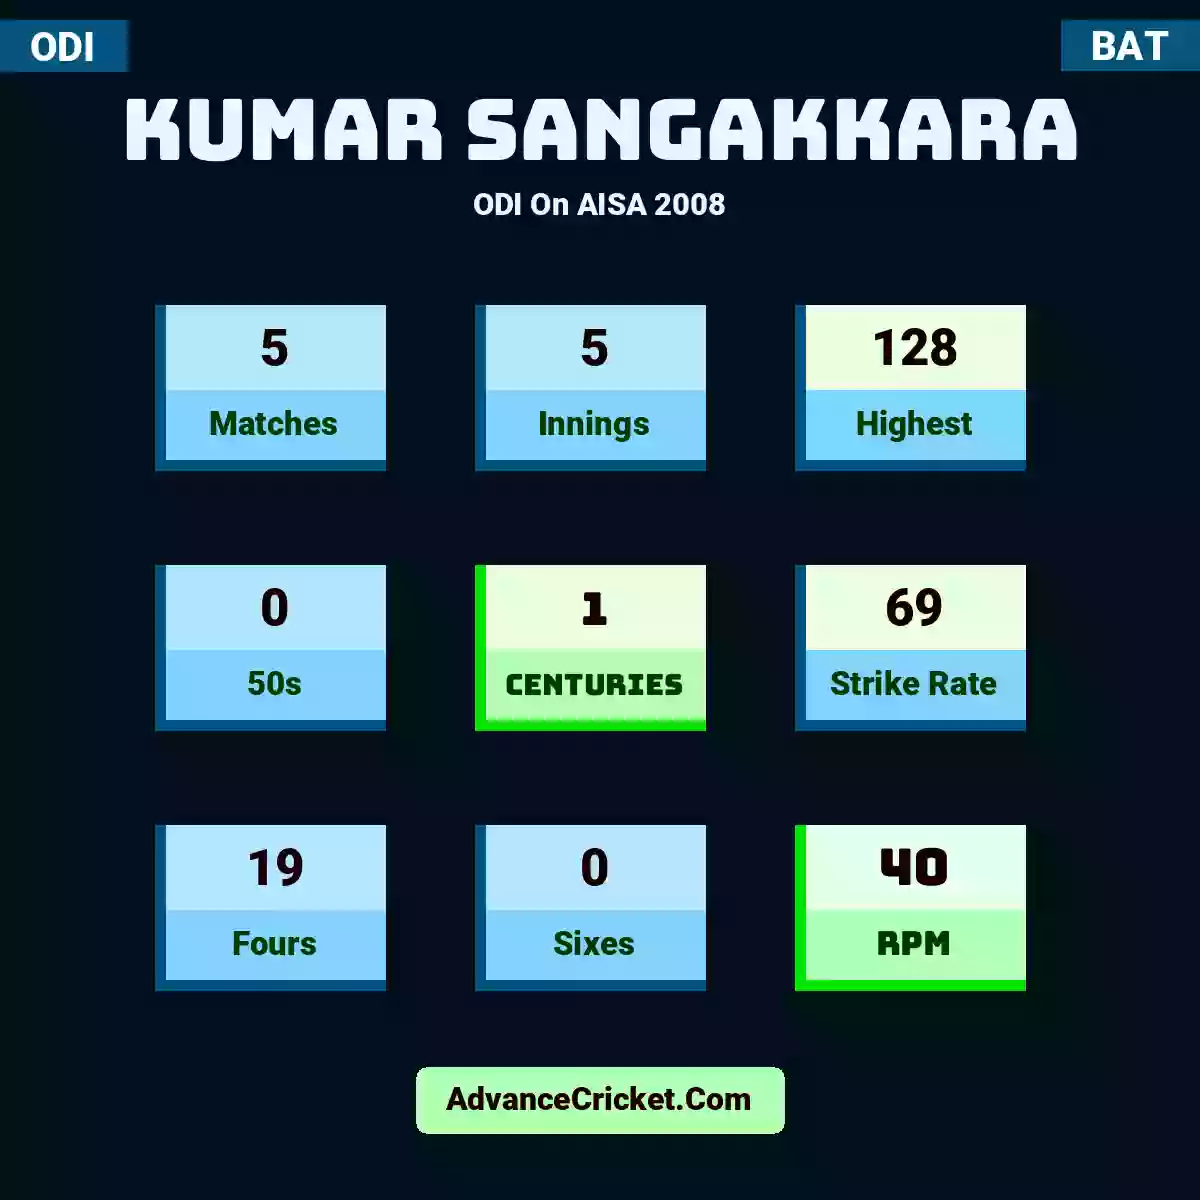 Kumar Sangakkara ODI  On AISA 2008, Kumar Sangakkara played 5 matches, scored 128 runs as highest, 0 half-centuries, and 1 centuries, with a strike rate of 69. K.Sangakkara hit 19 fours and 0 sixes, with an RPM of 40.